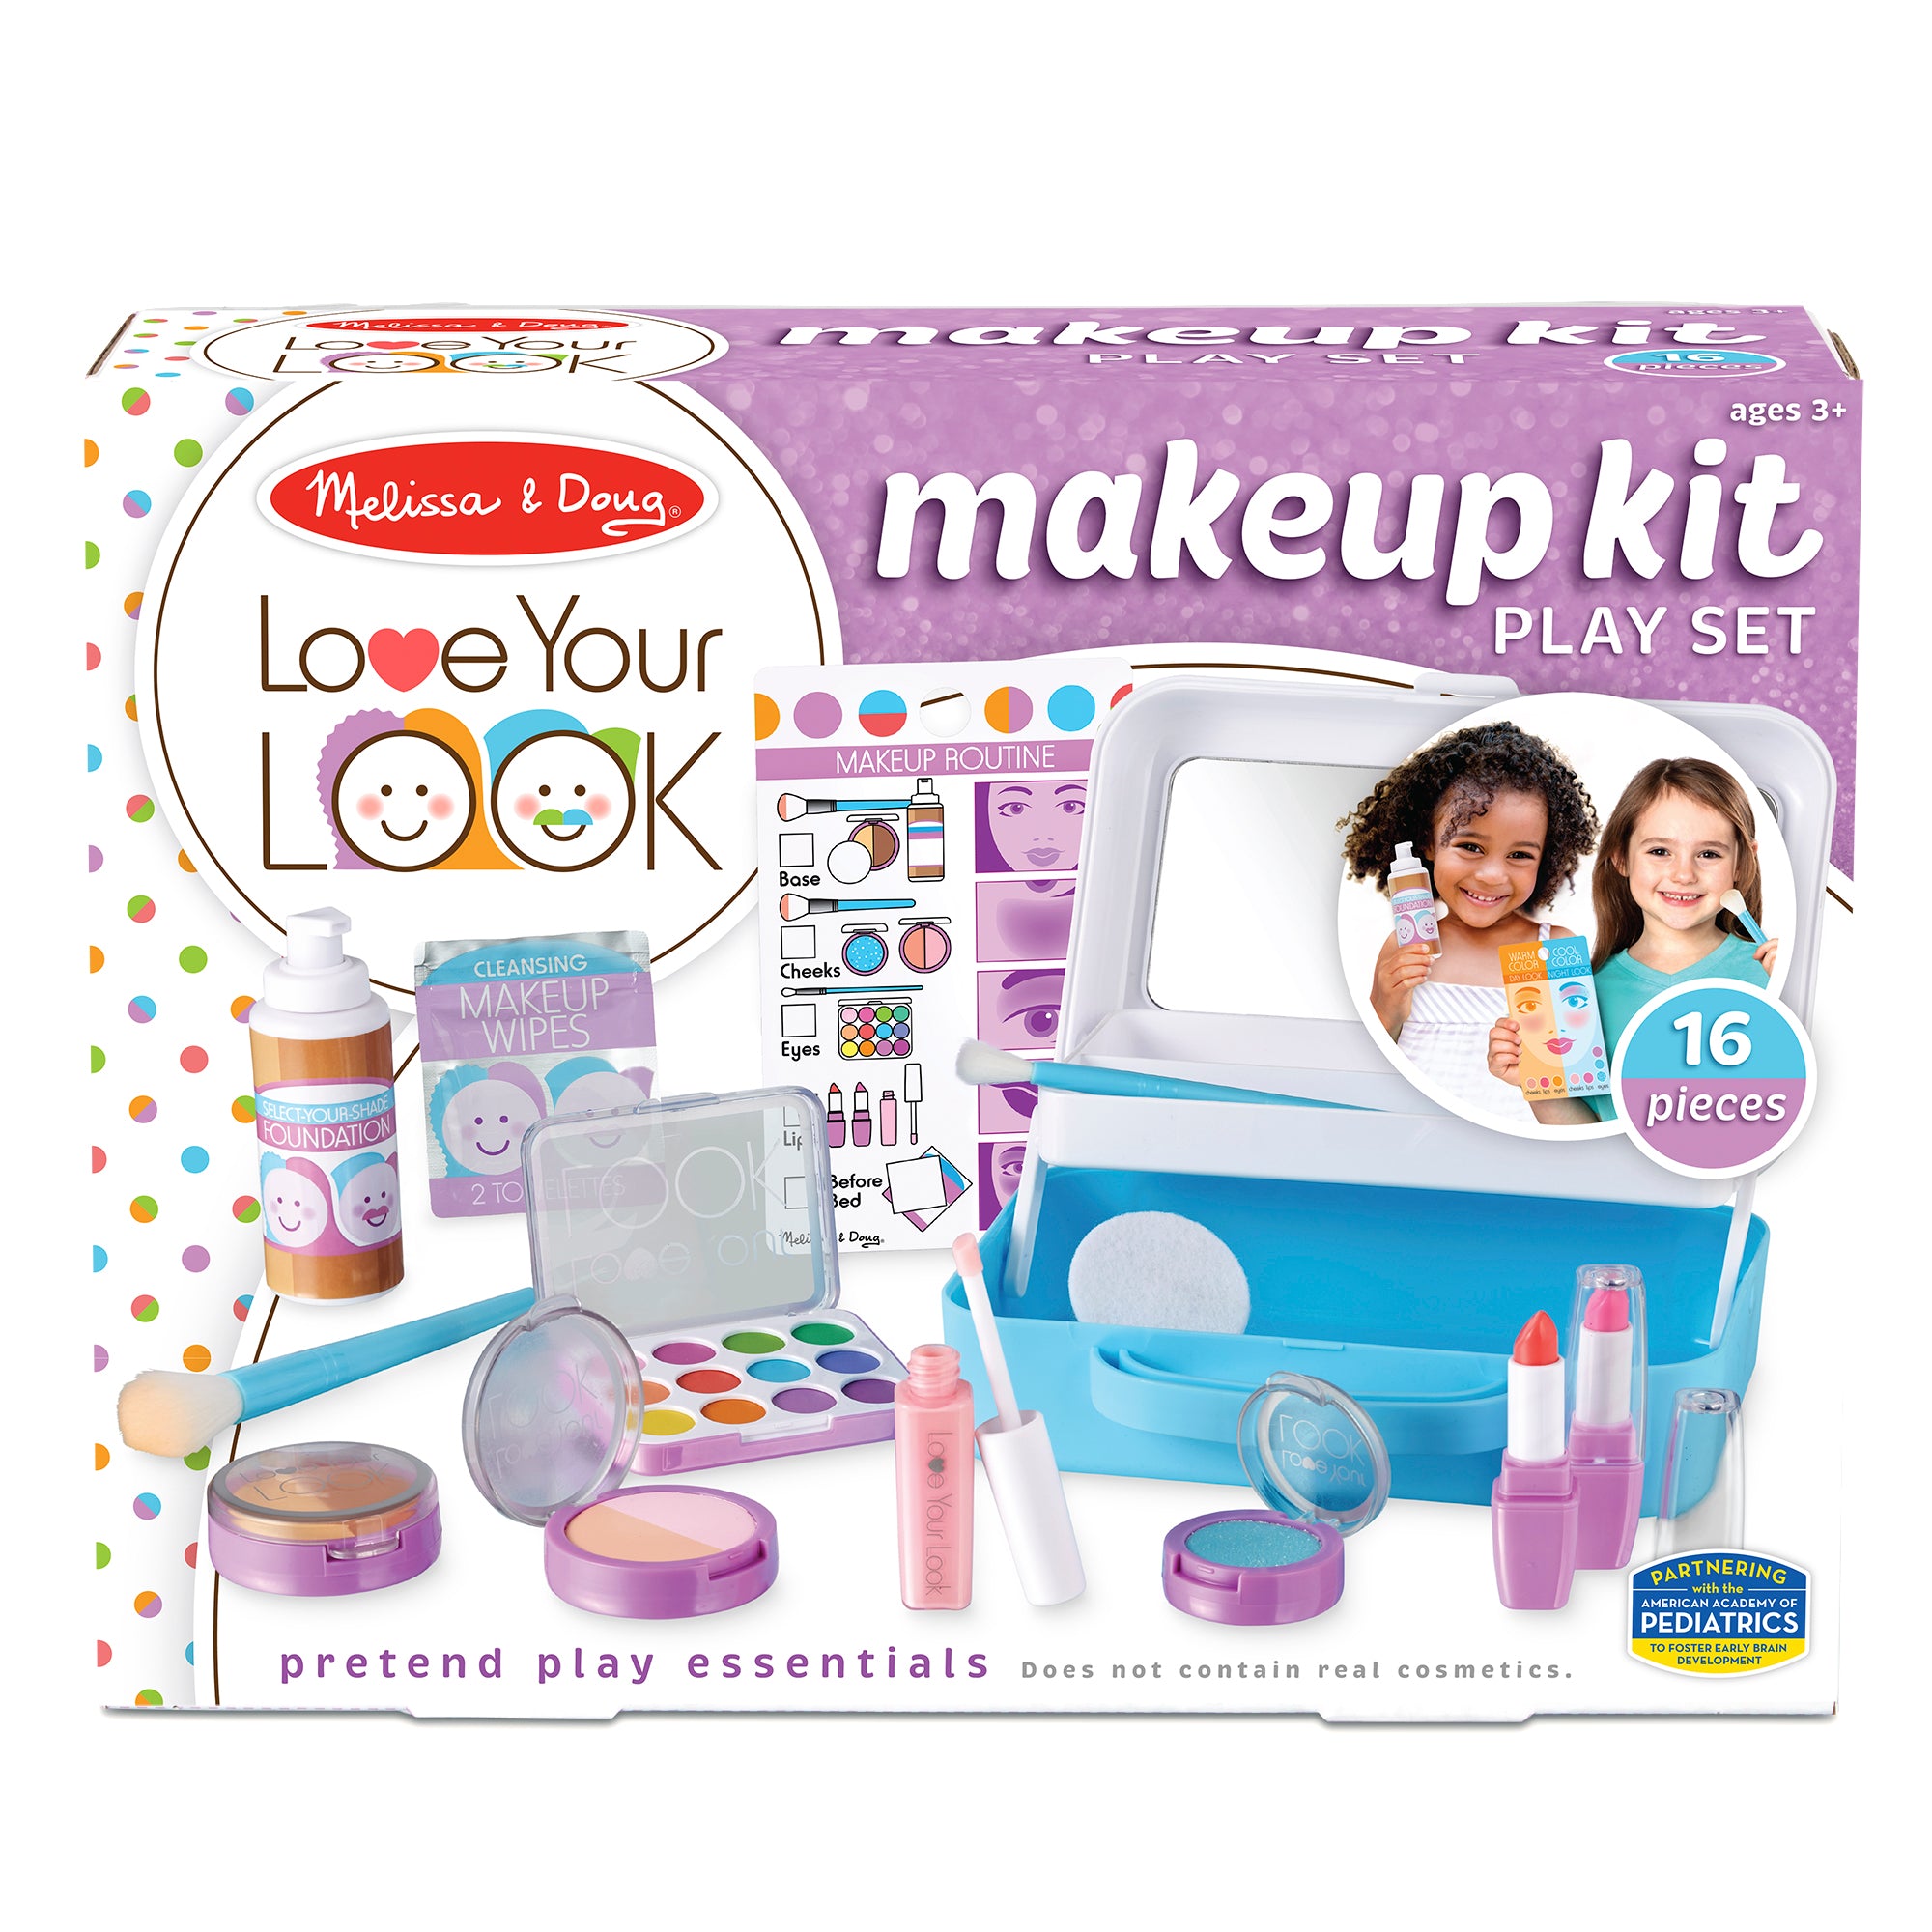 Makeup Kit Play Set